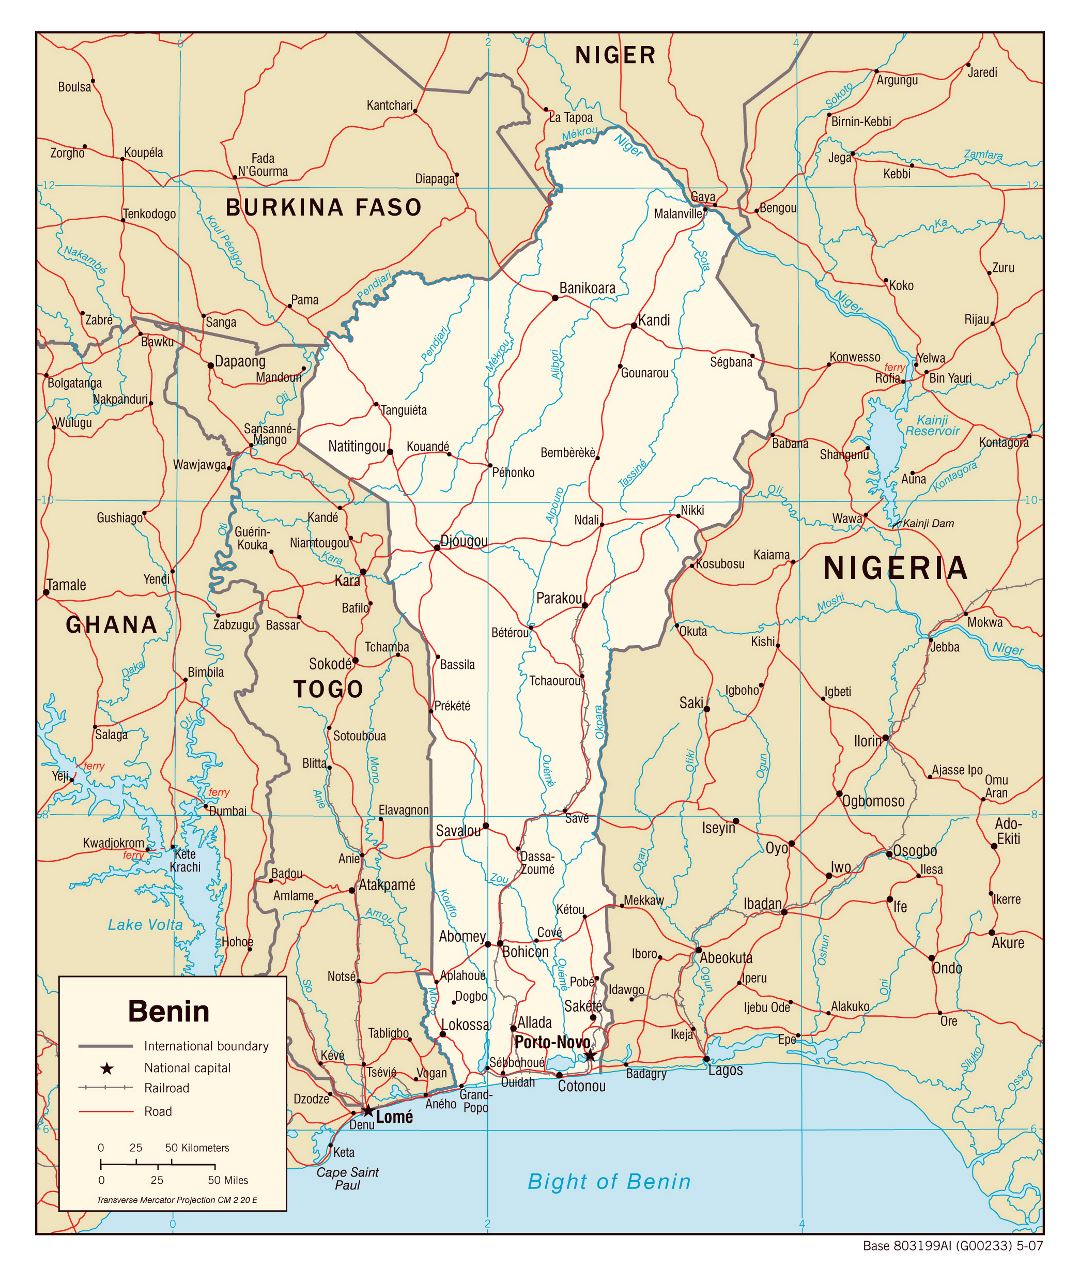 Grande detallado mapa político de Benin con carreteras, ferrocarriles y ciudades - 2007